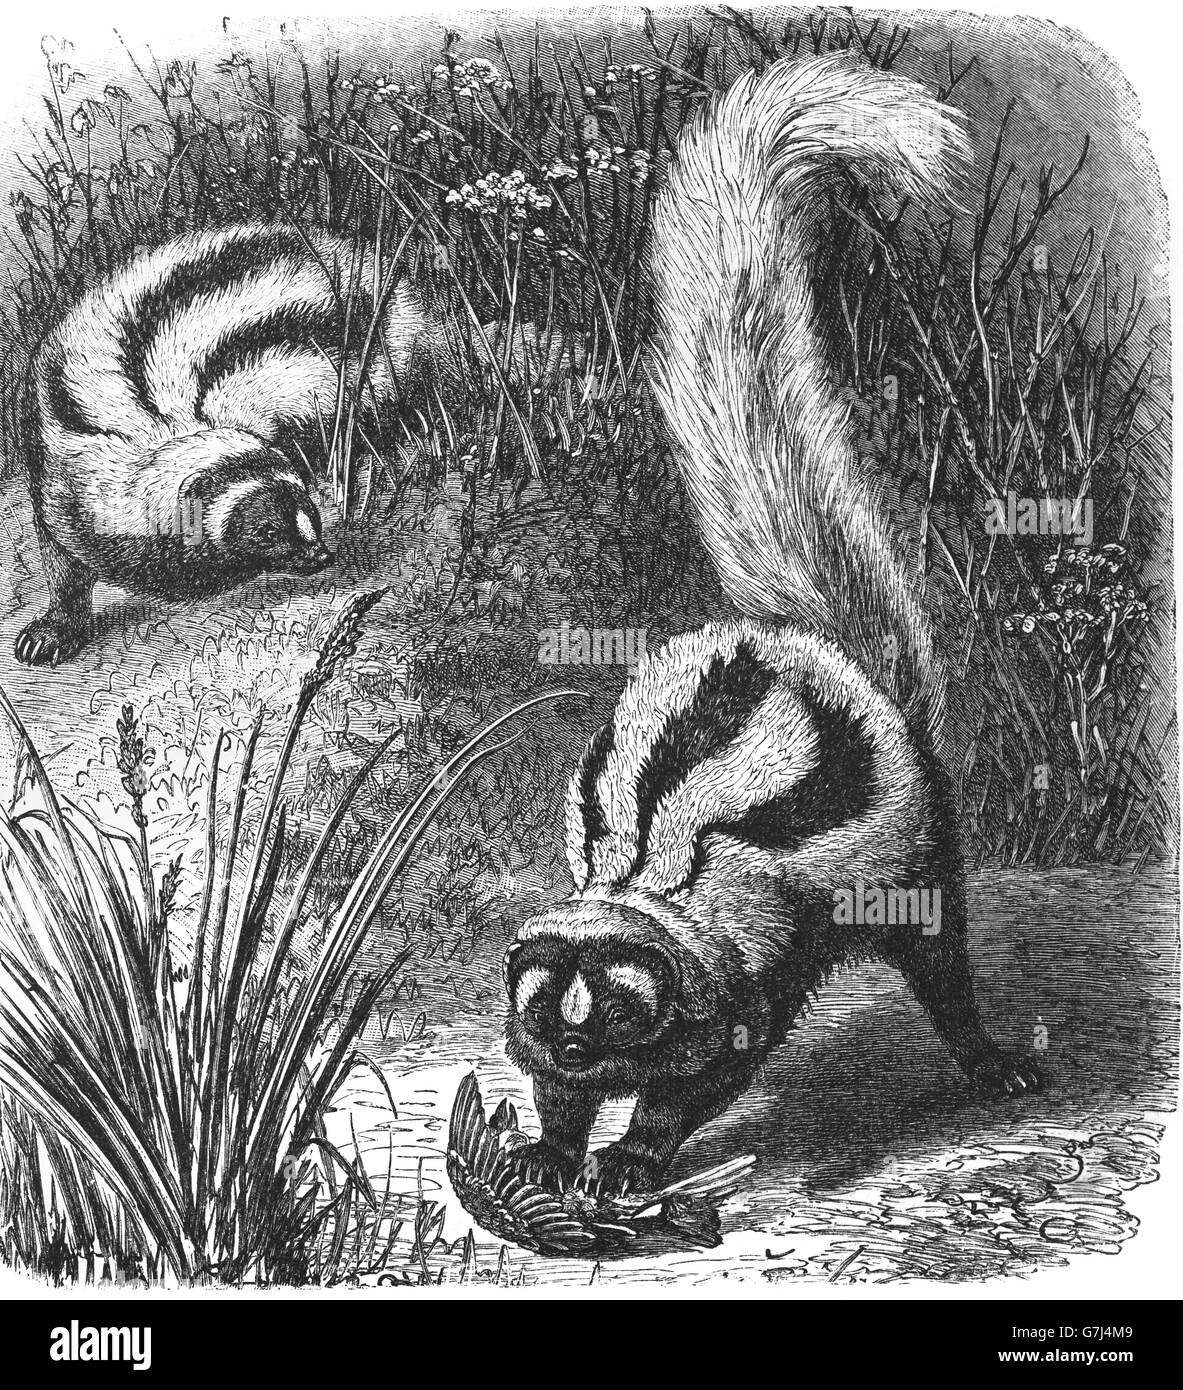 Putois rayé, Ictonyx striatus, zorilla, illustration de livre daté 1904 Banque D'Images